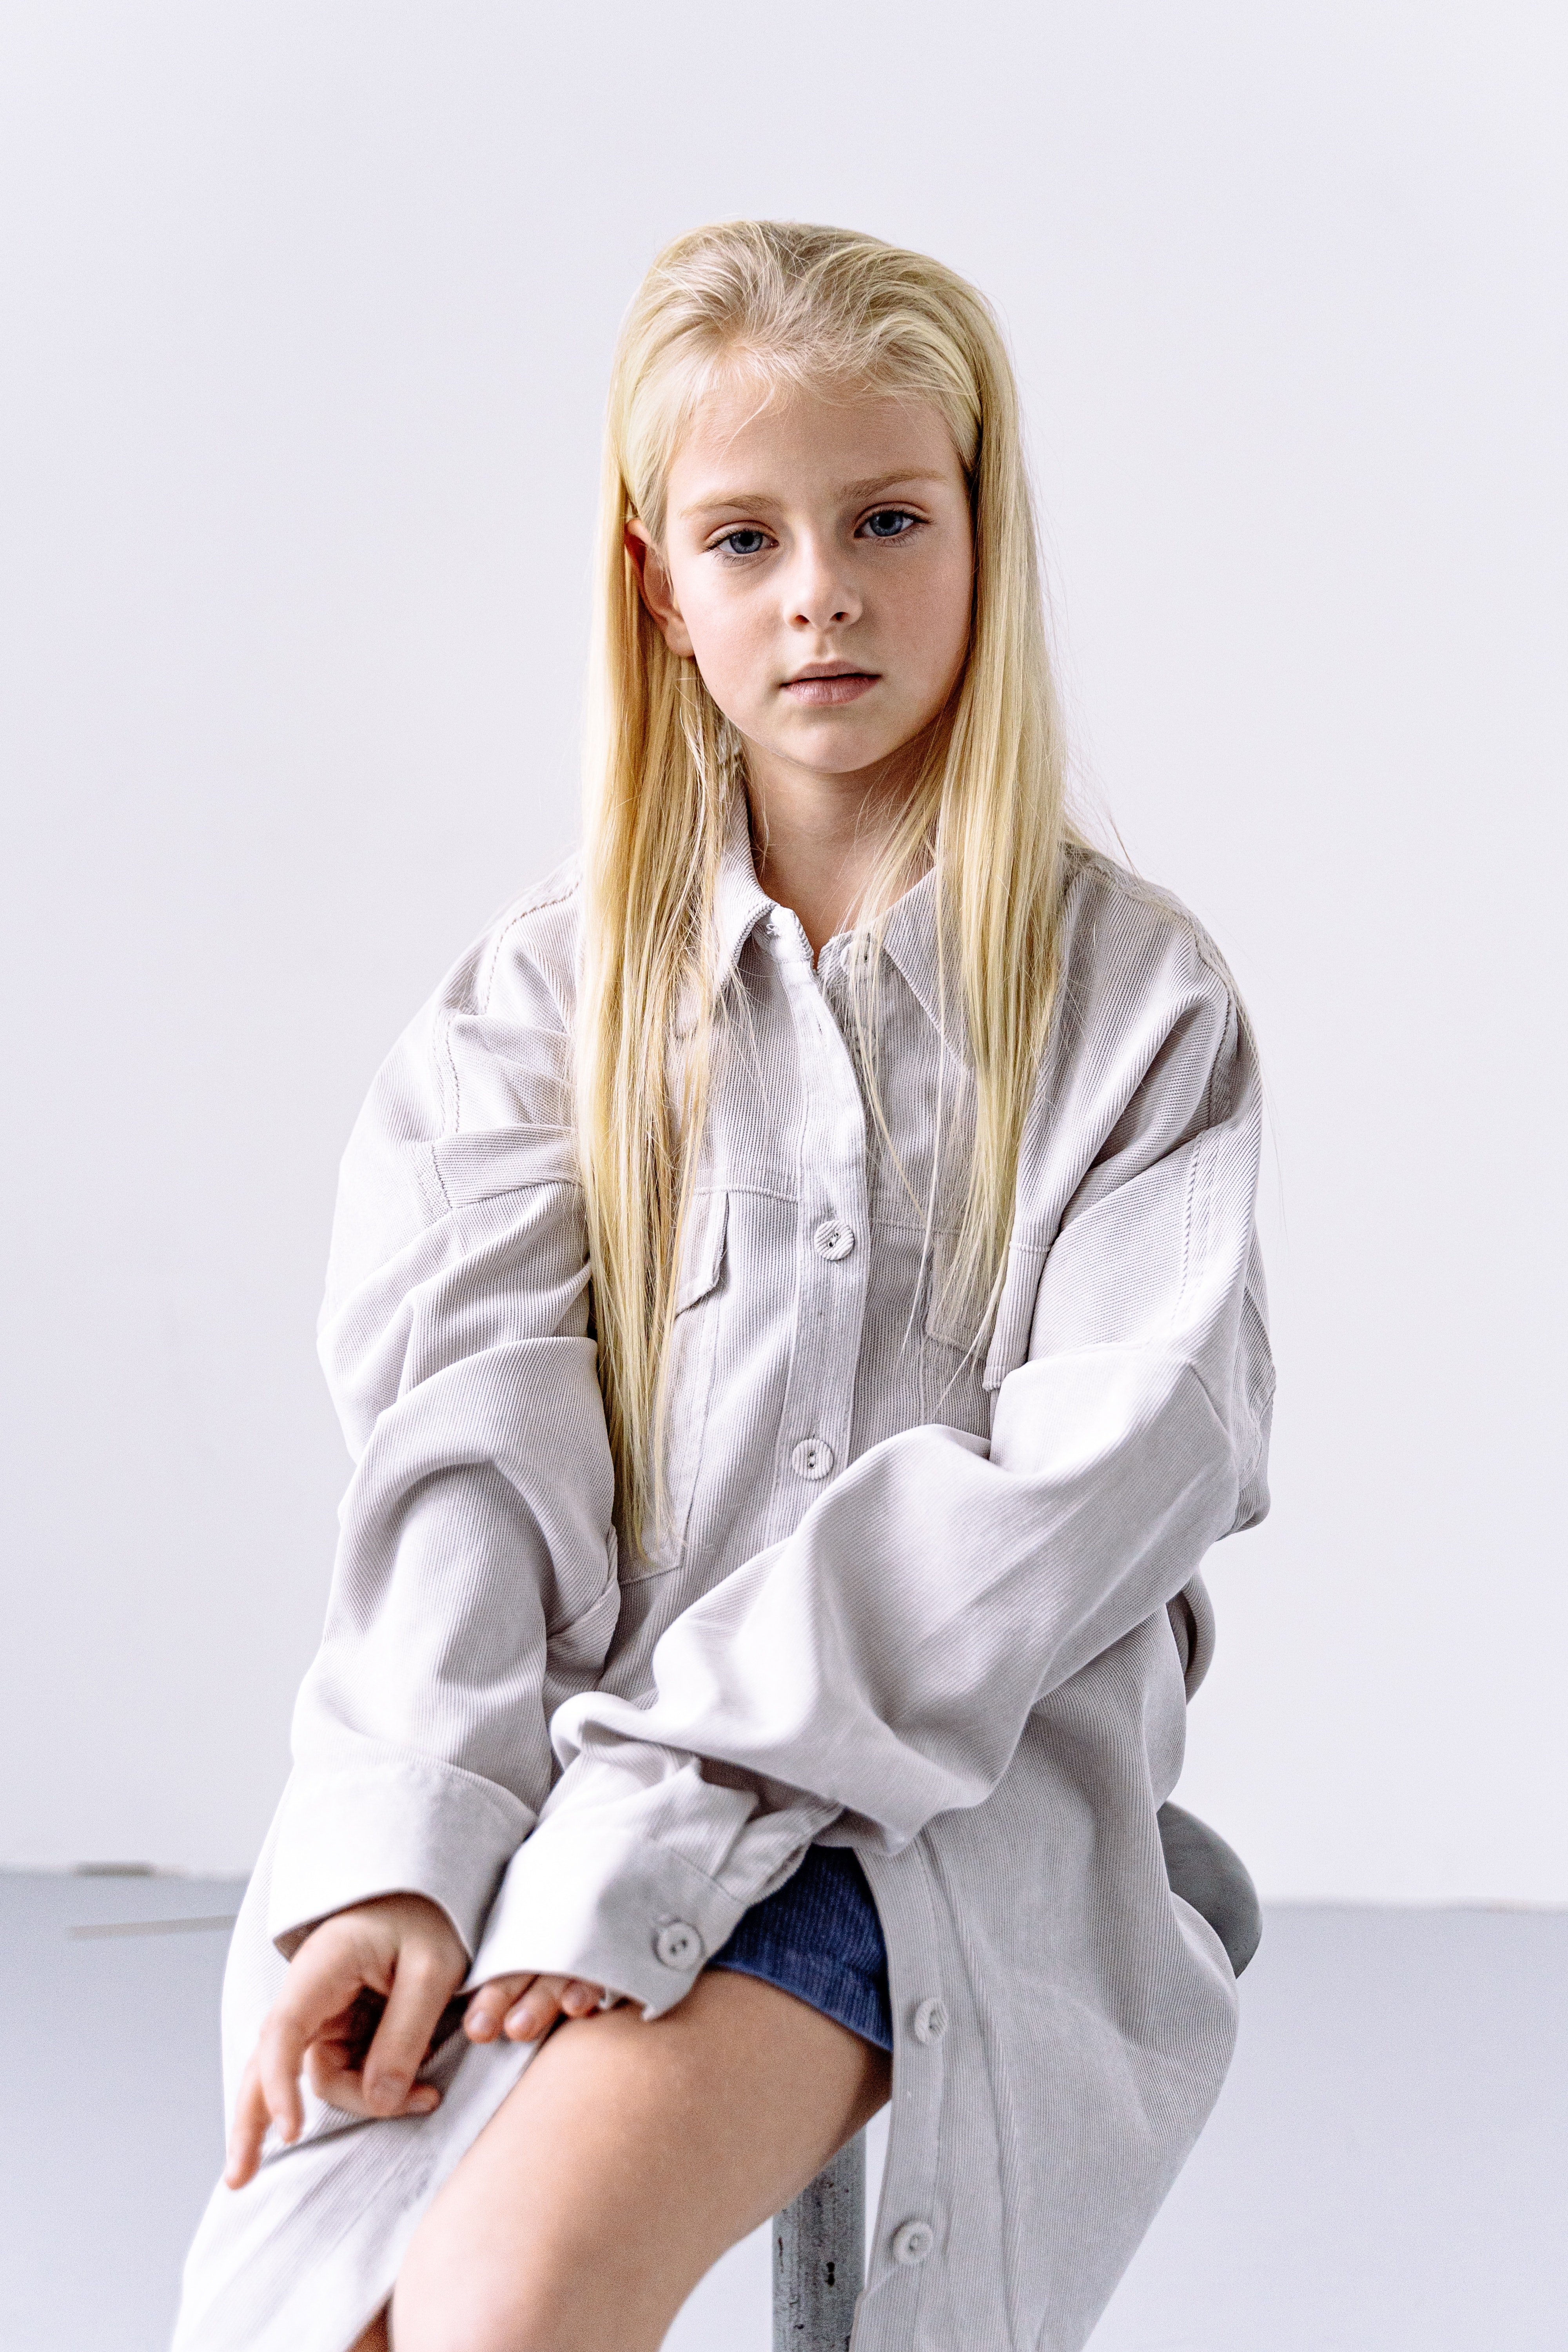 Retrato de niña de cabello rubio. | Foto: Pexels